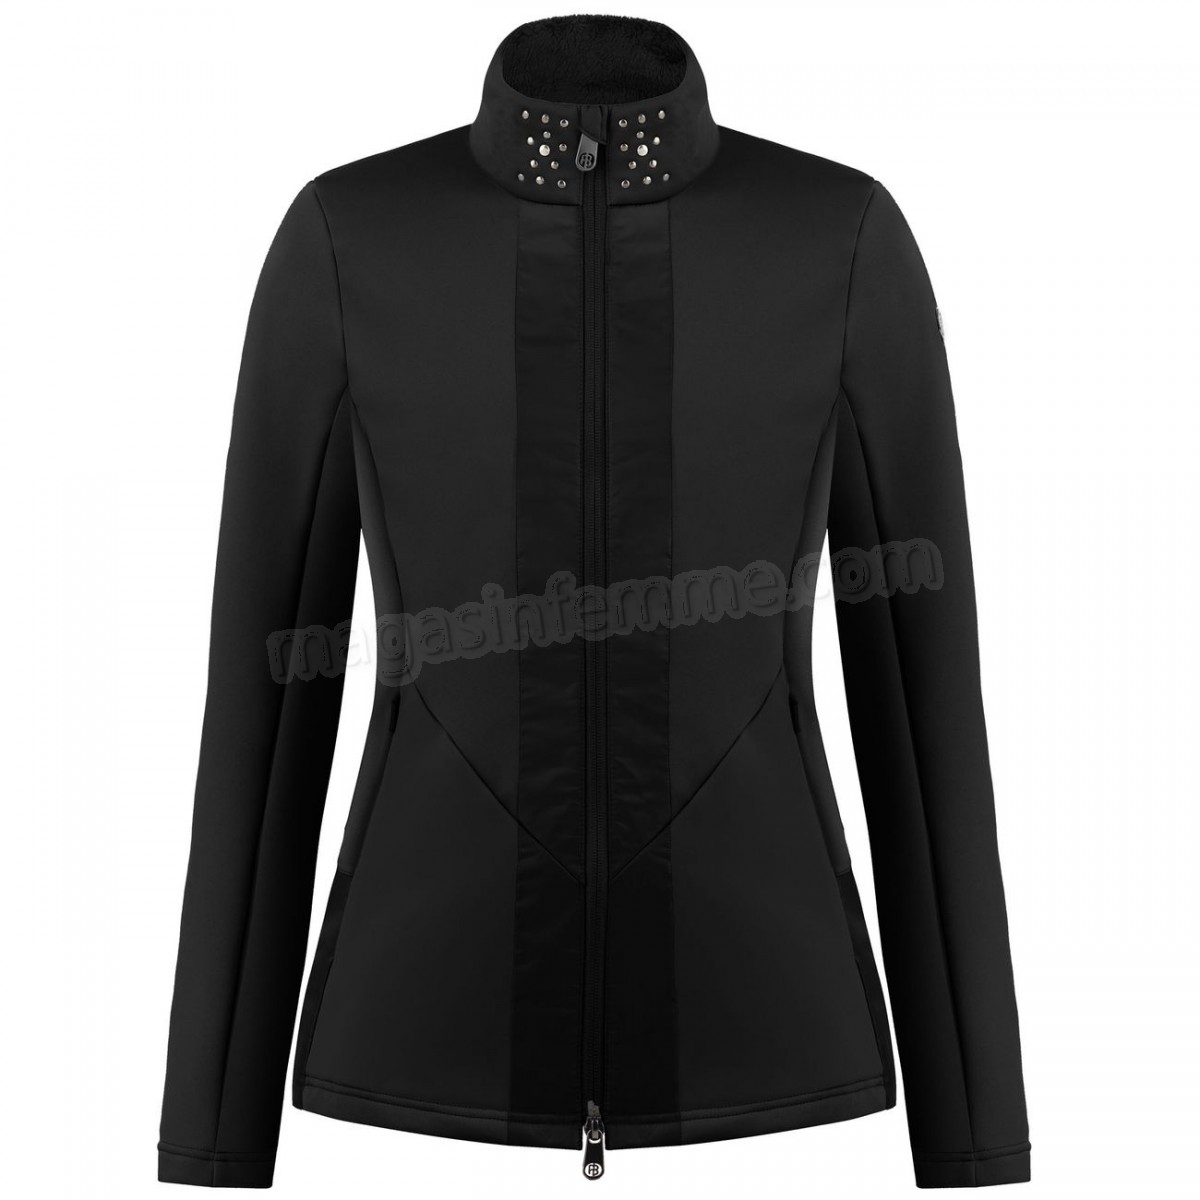 Poivre Blanc-Sports d'hiver femme POIVRE BLANC Veste En Polaire Poivre Blanc Hybrid Stretch Fleece Jacket 1702 Black Femme en solde - -0